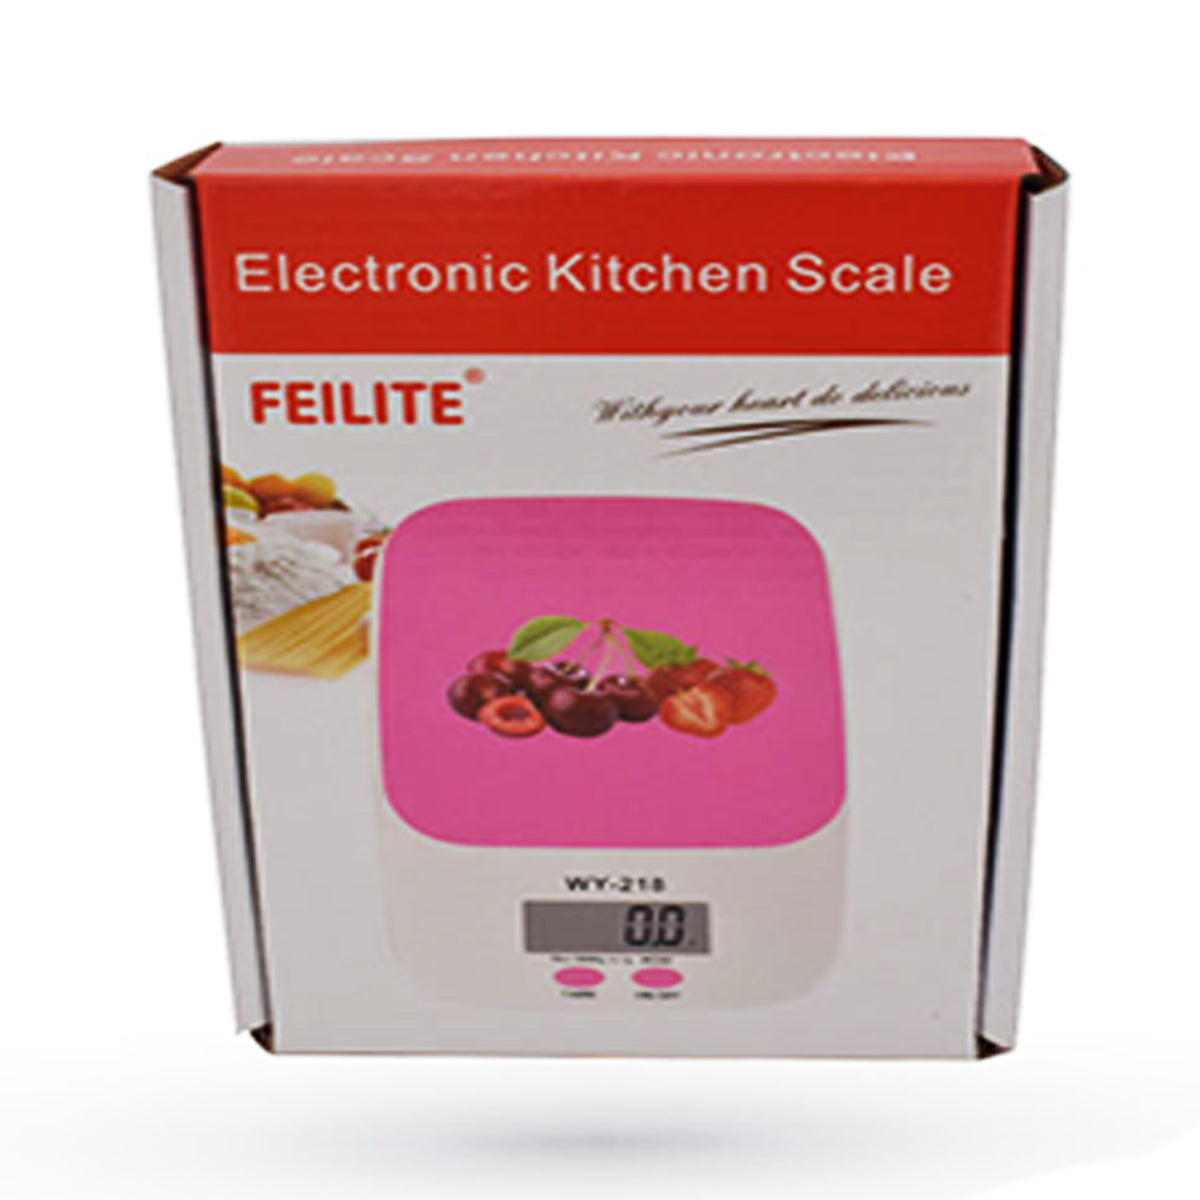 Mundo Electro - PESA DIGITAL COCINA 🍯 Gramera digital ideal para uso en la  cocina, tiene una capacidad máxima de 7 kilos con una sensibilidad de 1g.  ☑️Lectura en gramos y onzas